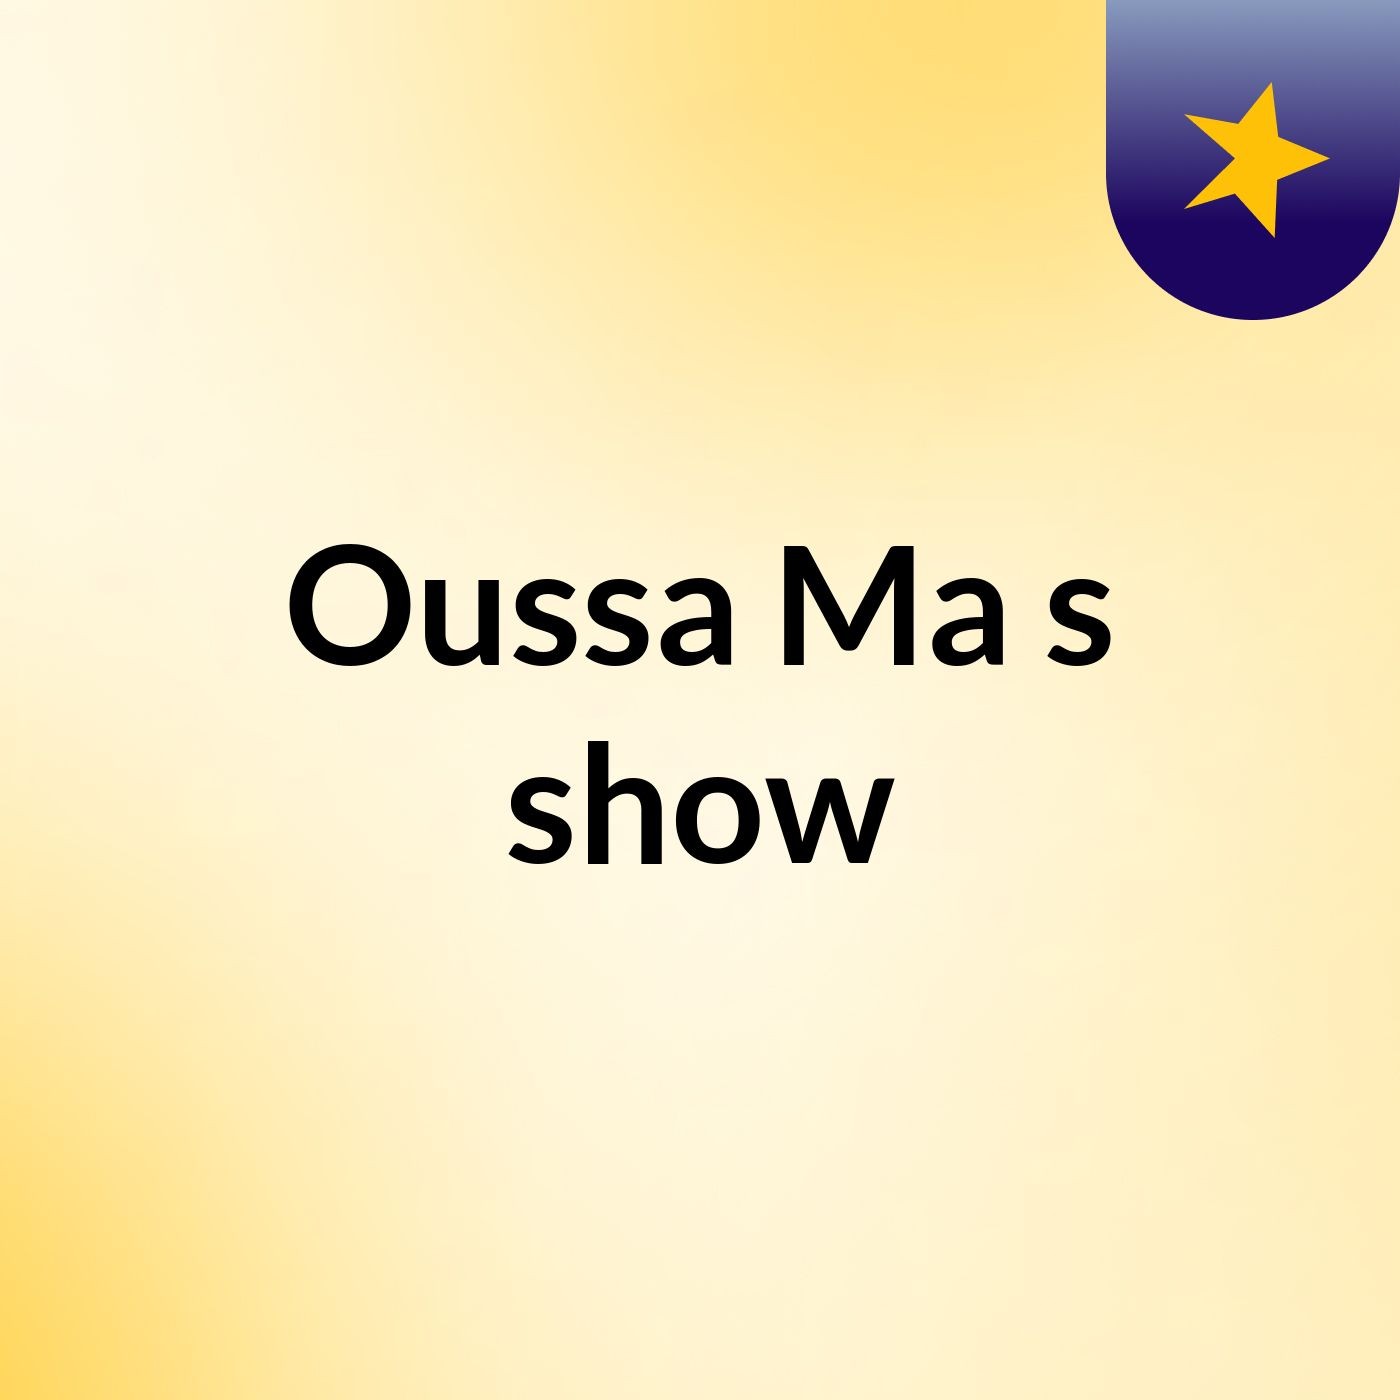 Oussa Ma's show